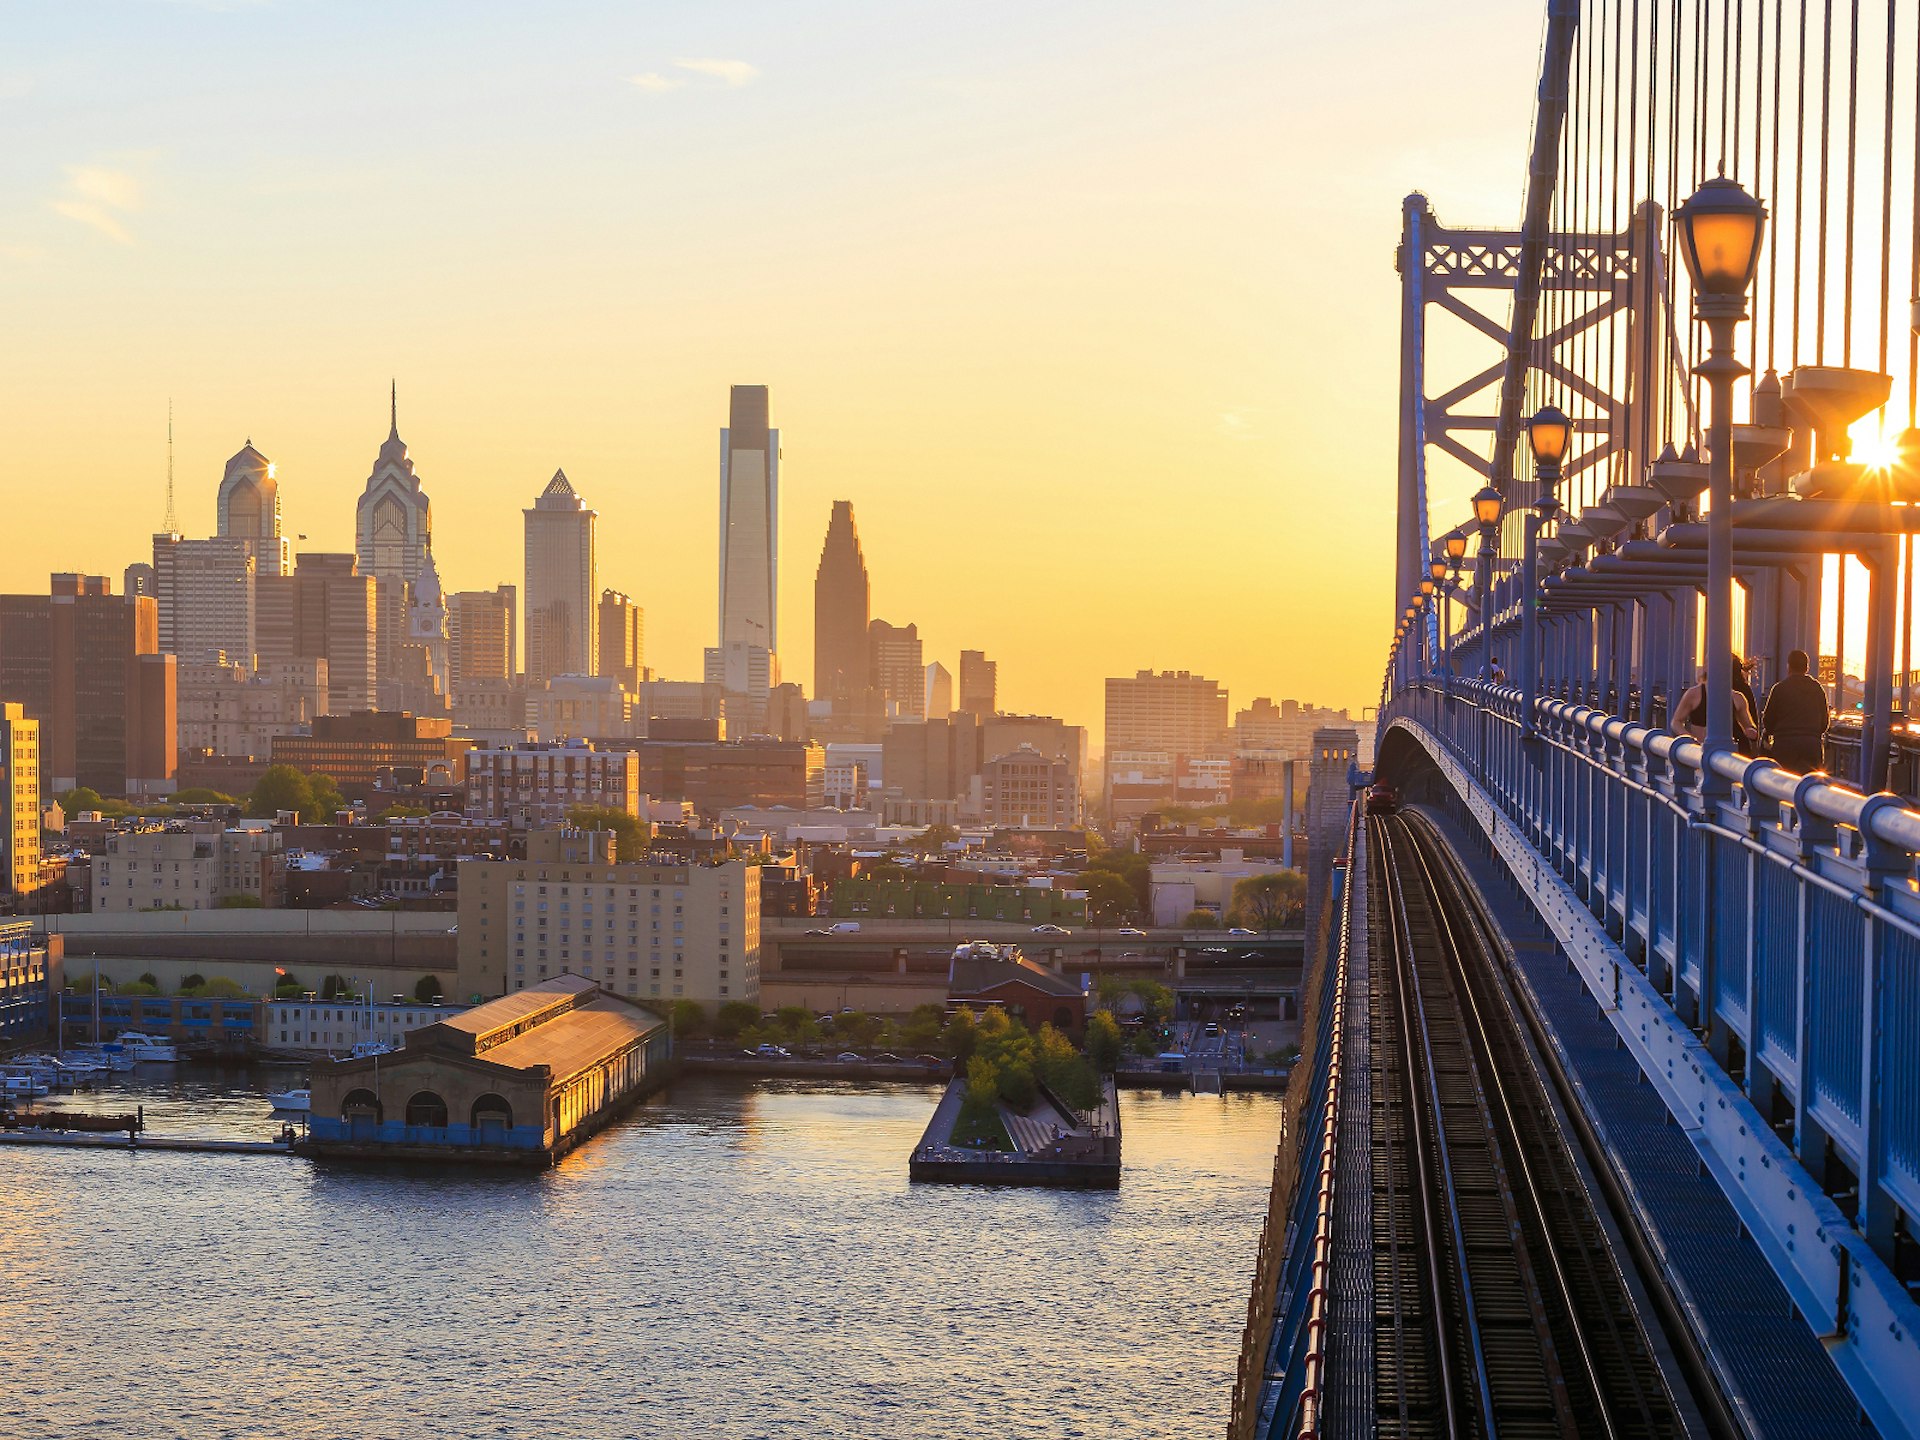 The Philadelphia skyline from the Benjamin Franklin Bridge